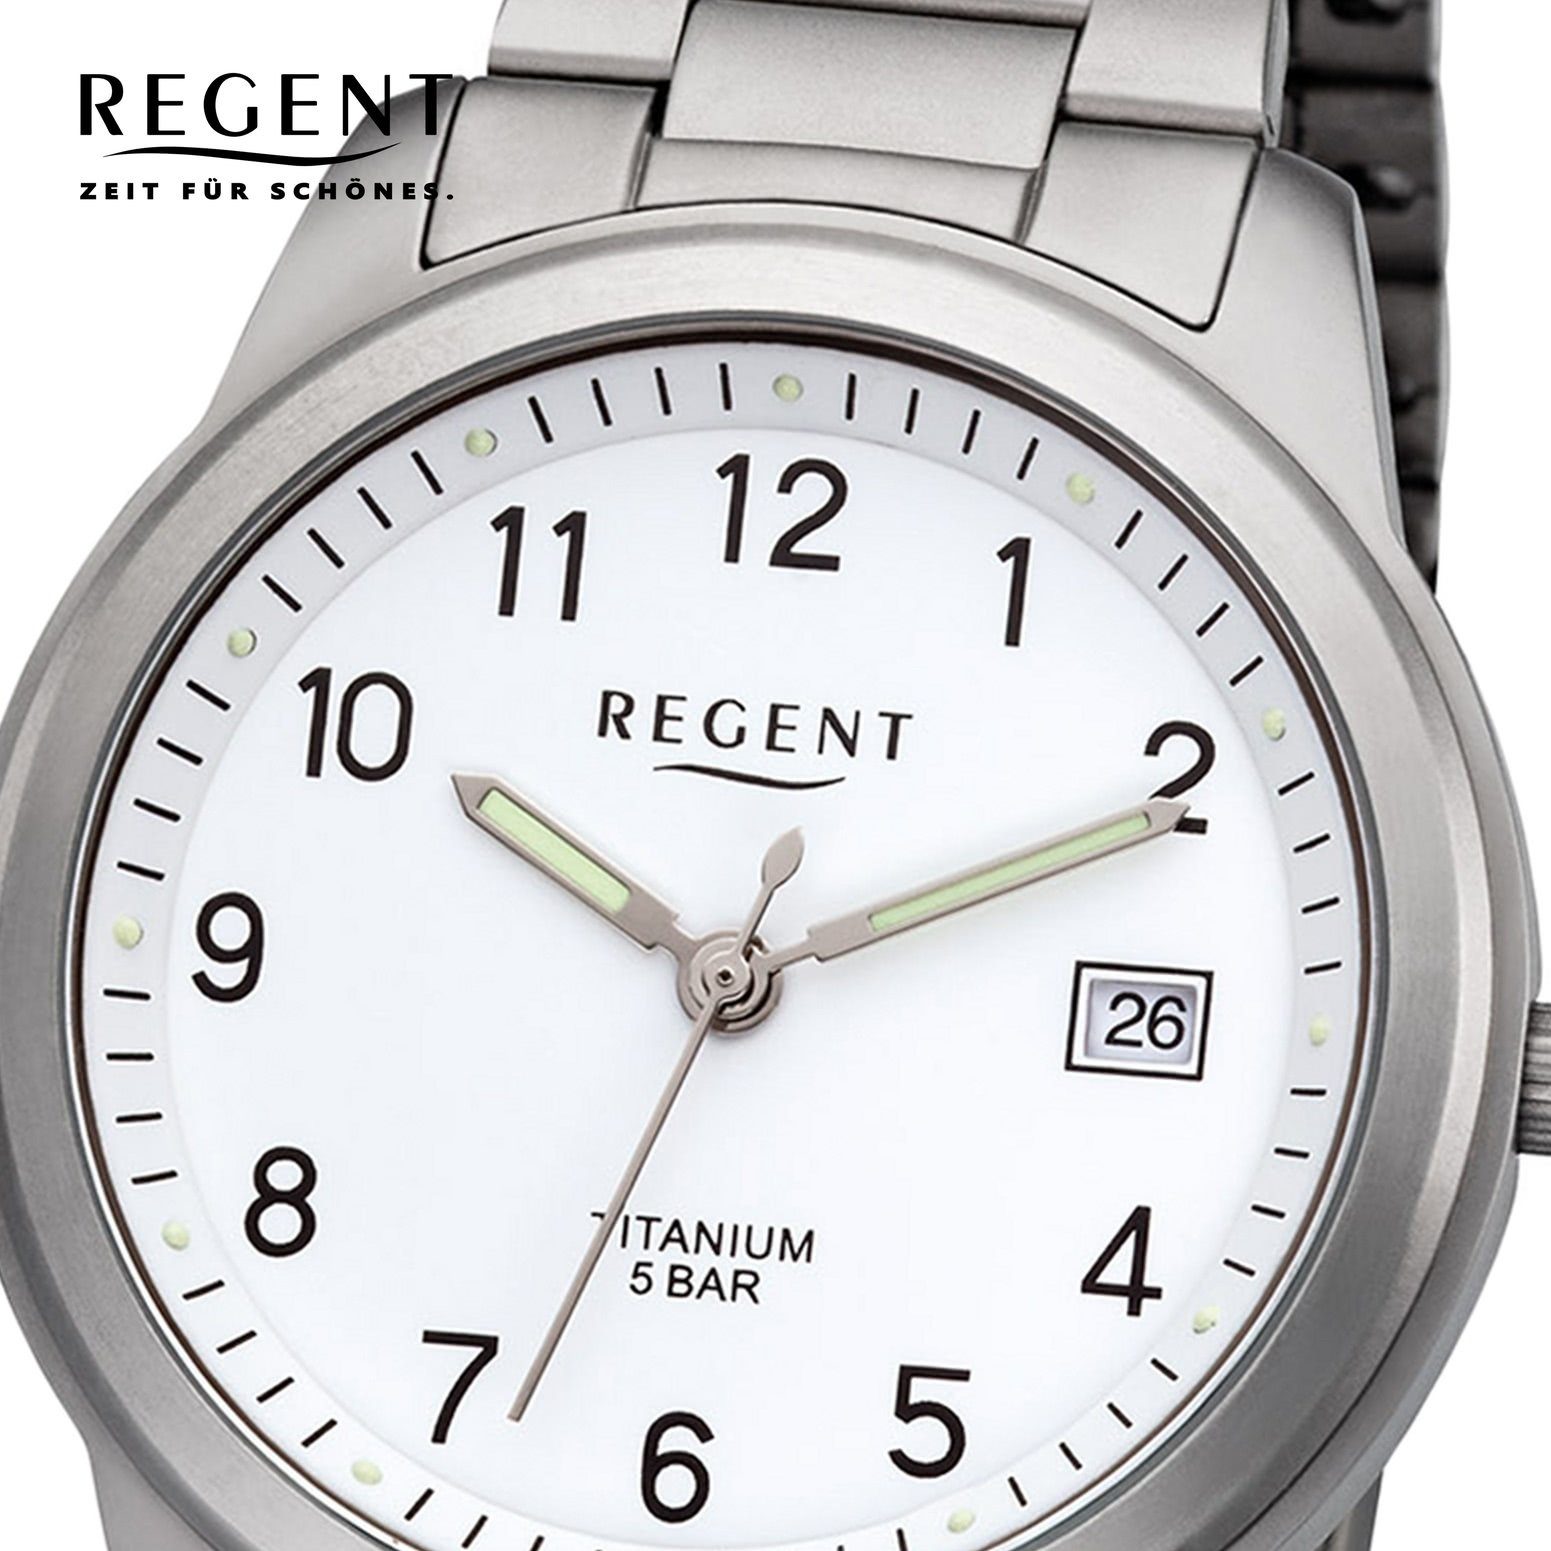 Regent rund, Metallarmband Herren Metall (ca. Armbanduhr Regent Herren F-208 Quarzwerk, mittel 36mm), Quarzuhr Uhr